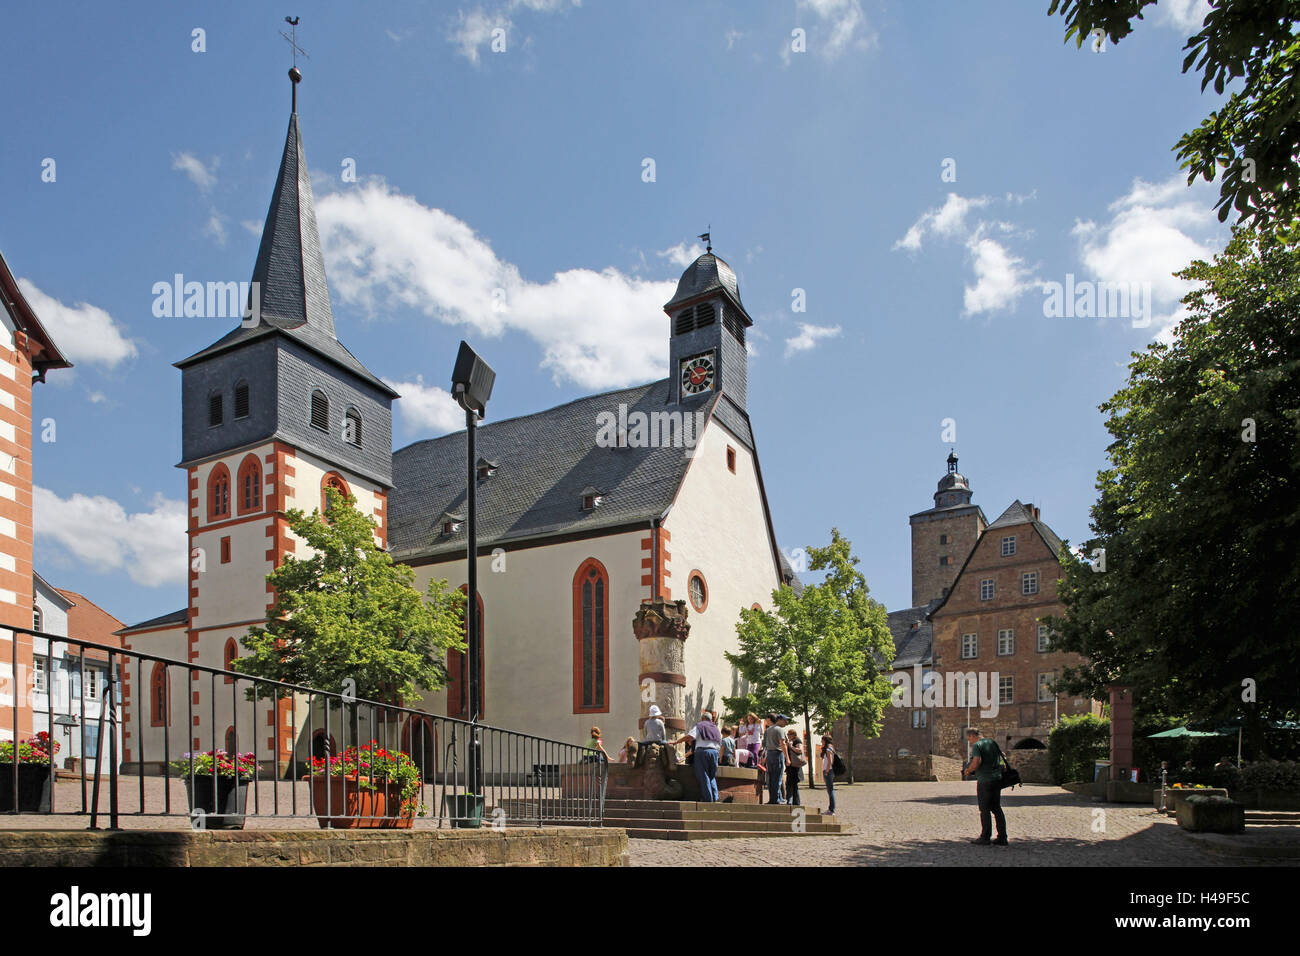 Germania, Assia, Steinau in strada, il municipio, la chiesa di Santa Caterina, favola ben, gruppo di tour, serratura, Foto Stock